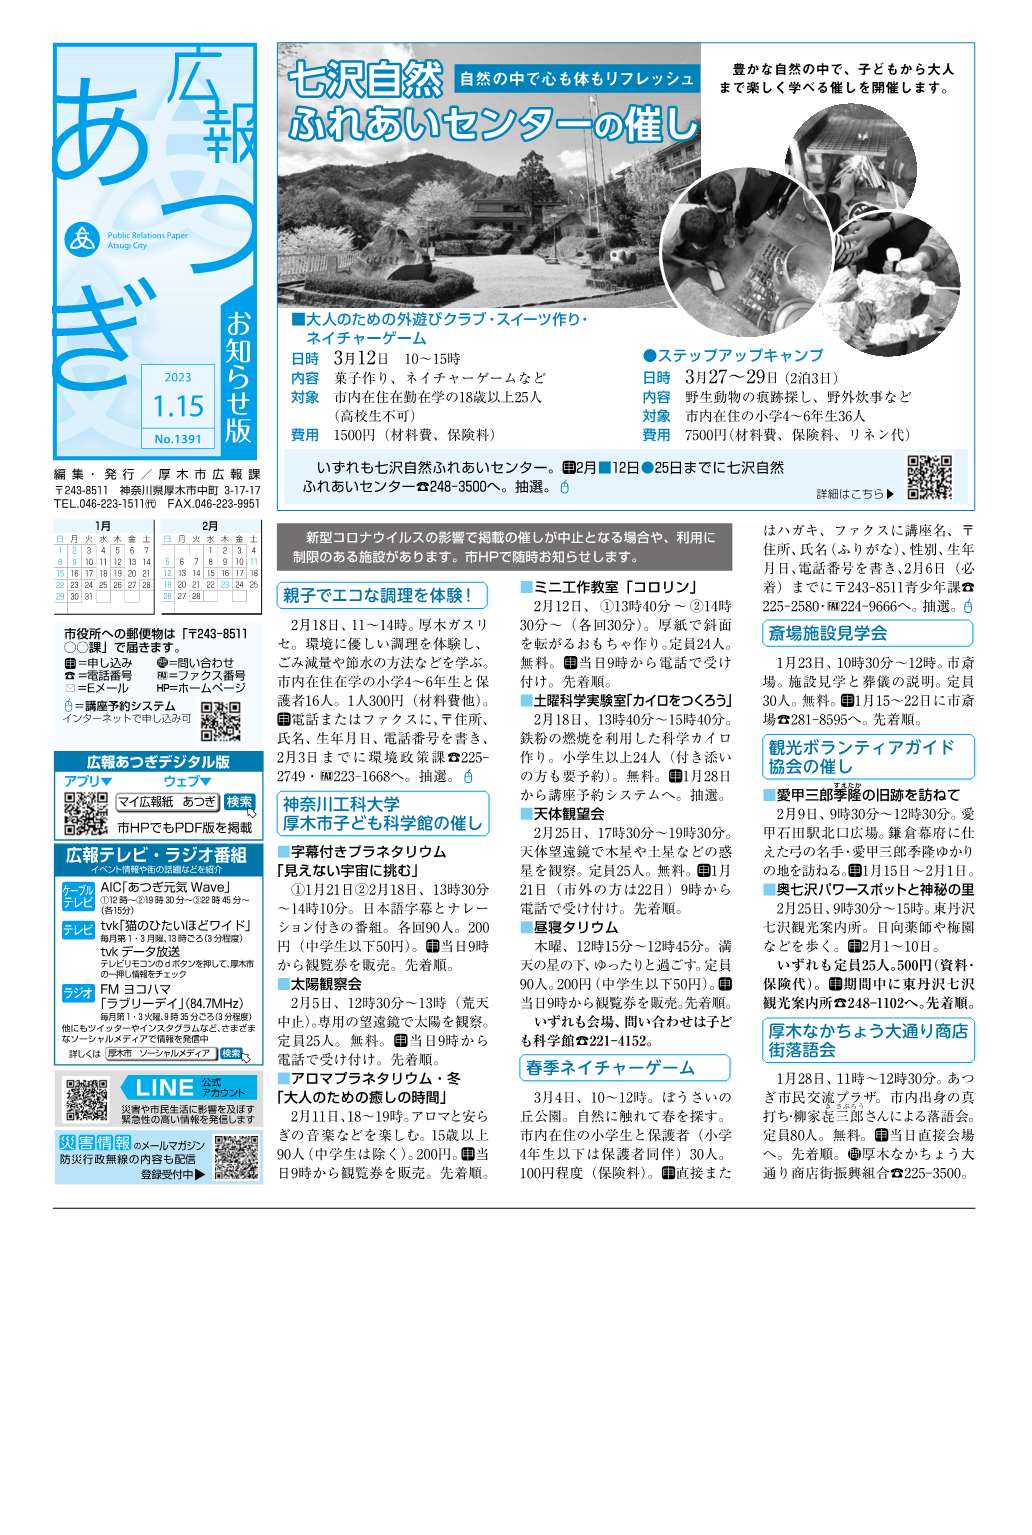 広報あつぎ1月15日号の1面のイメージ画像